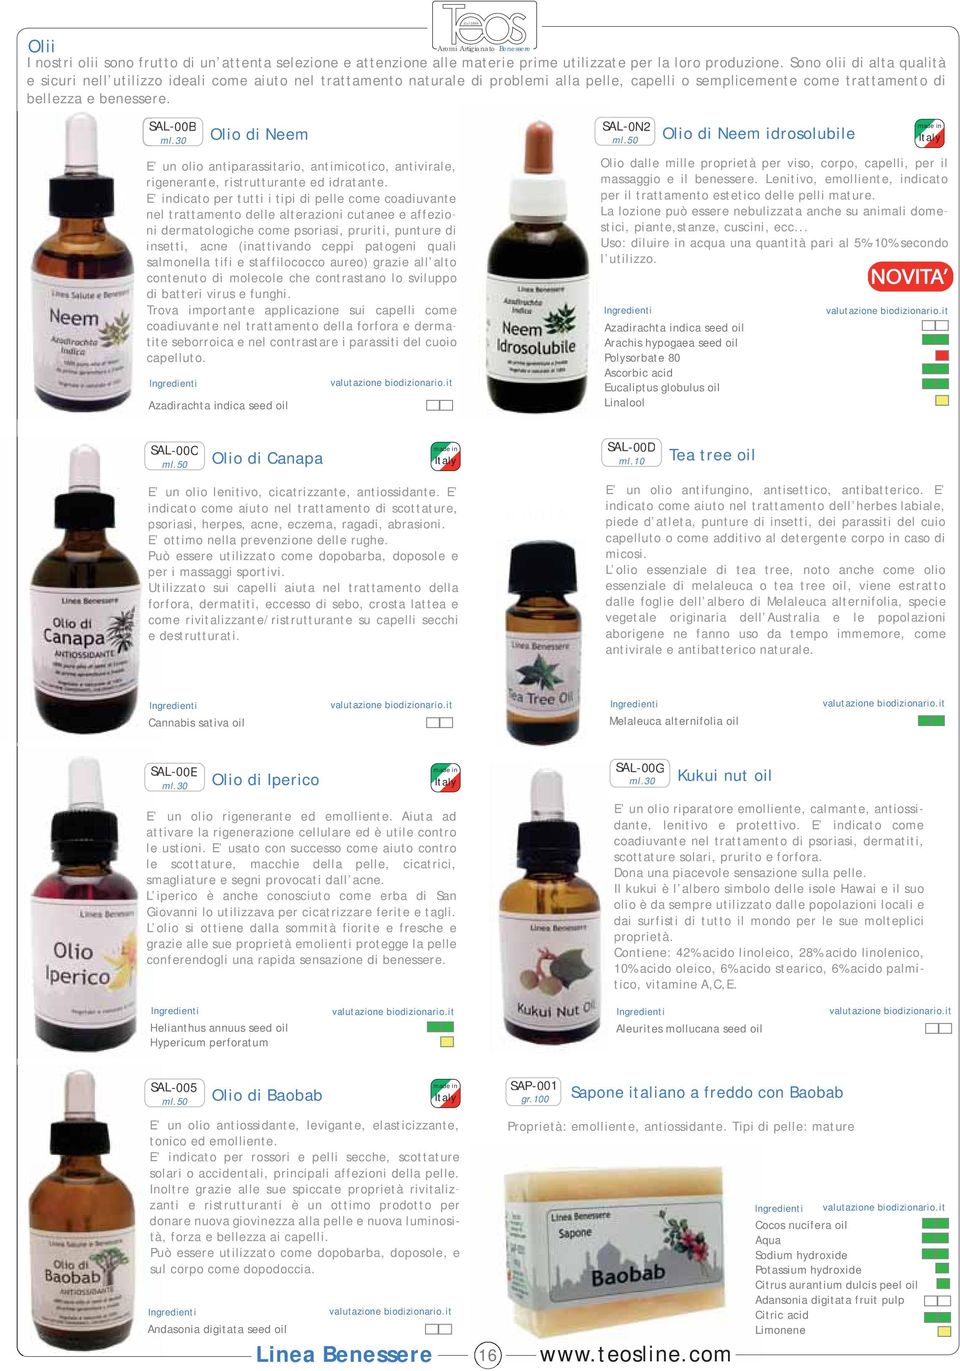 30 Olio di Neem E un olio antiparassitario, antimicotico, antivirale, rigenerante, ristrutturante ed idratante.